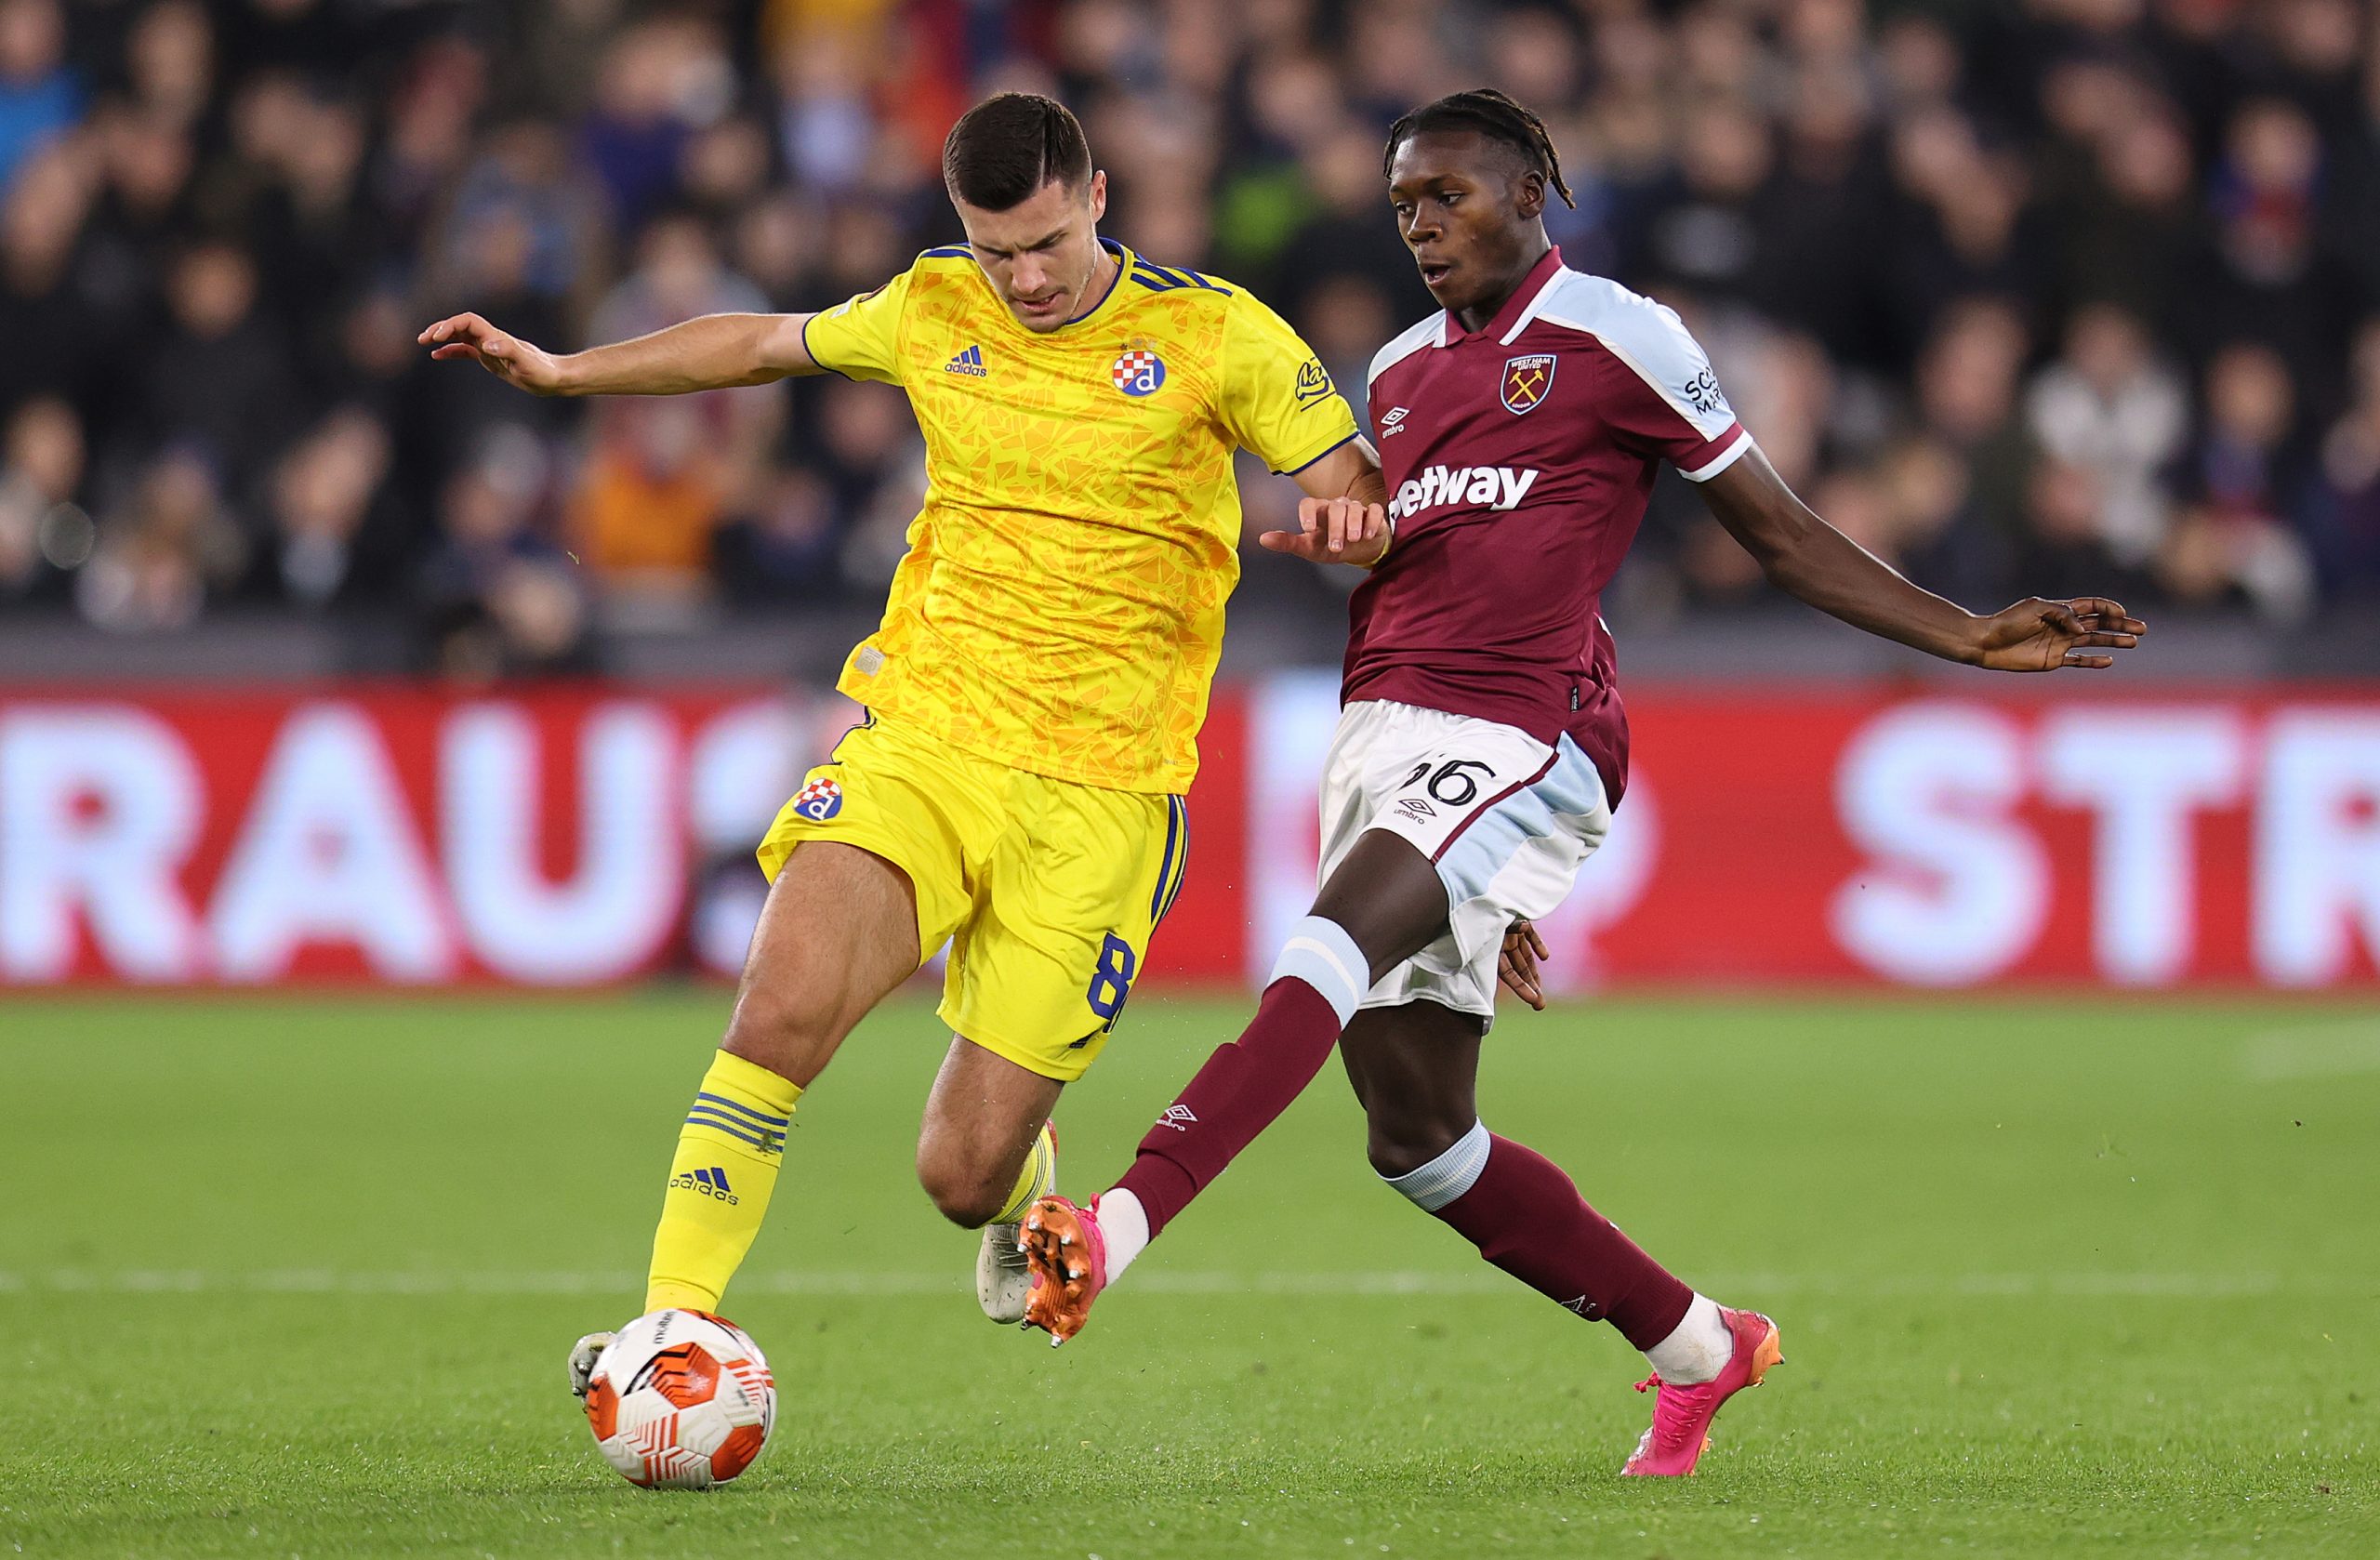 Nottingham Forest target Emmanuel Longelo in action for West Ham